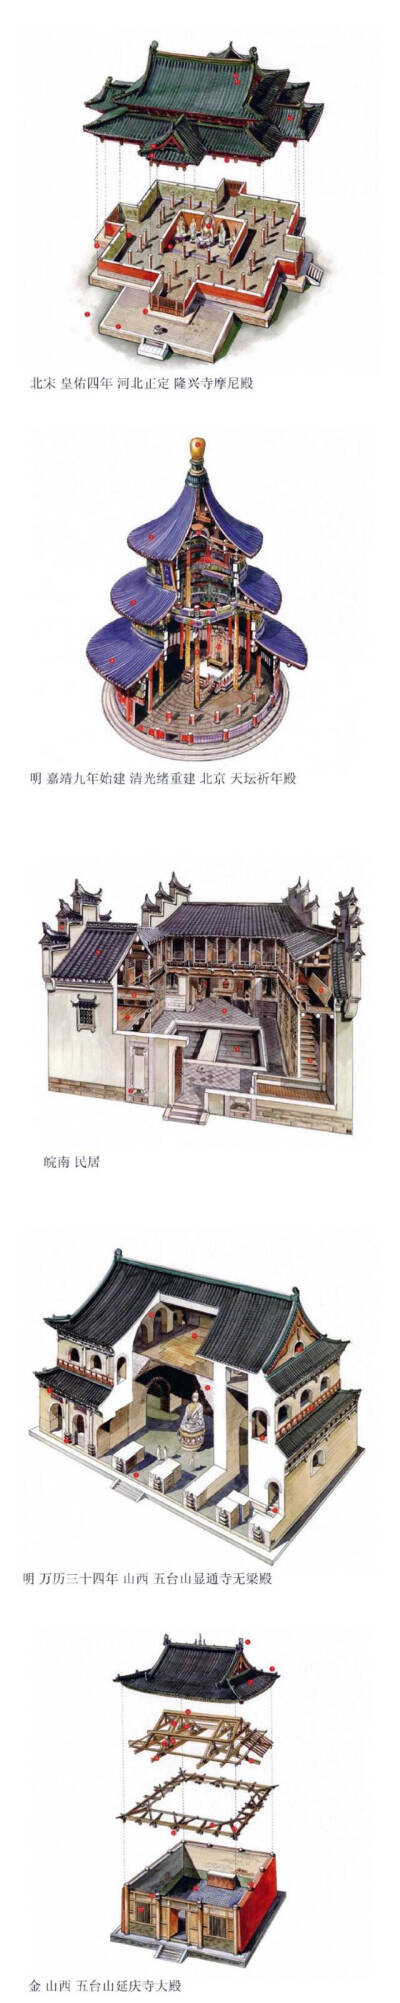 中国古建筑透视图,来自台湾李乾朗手绘